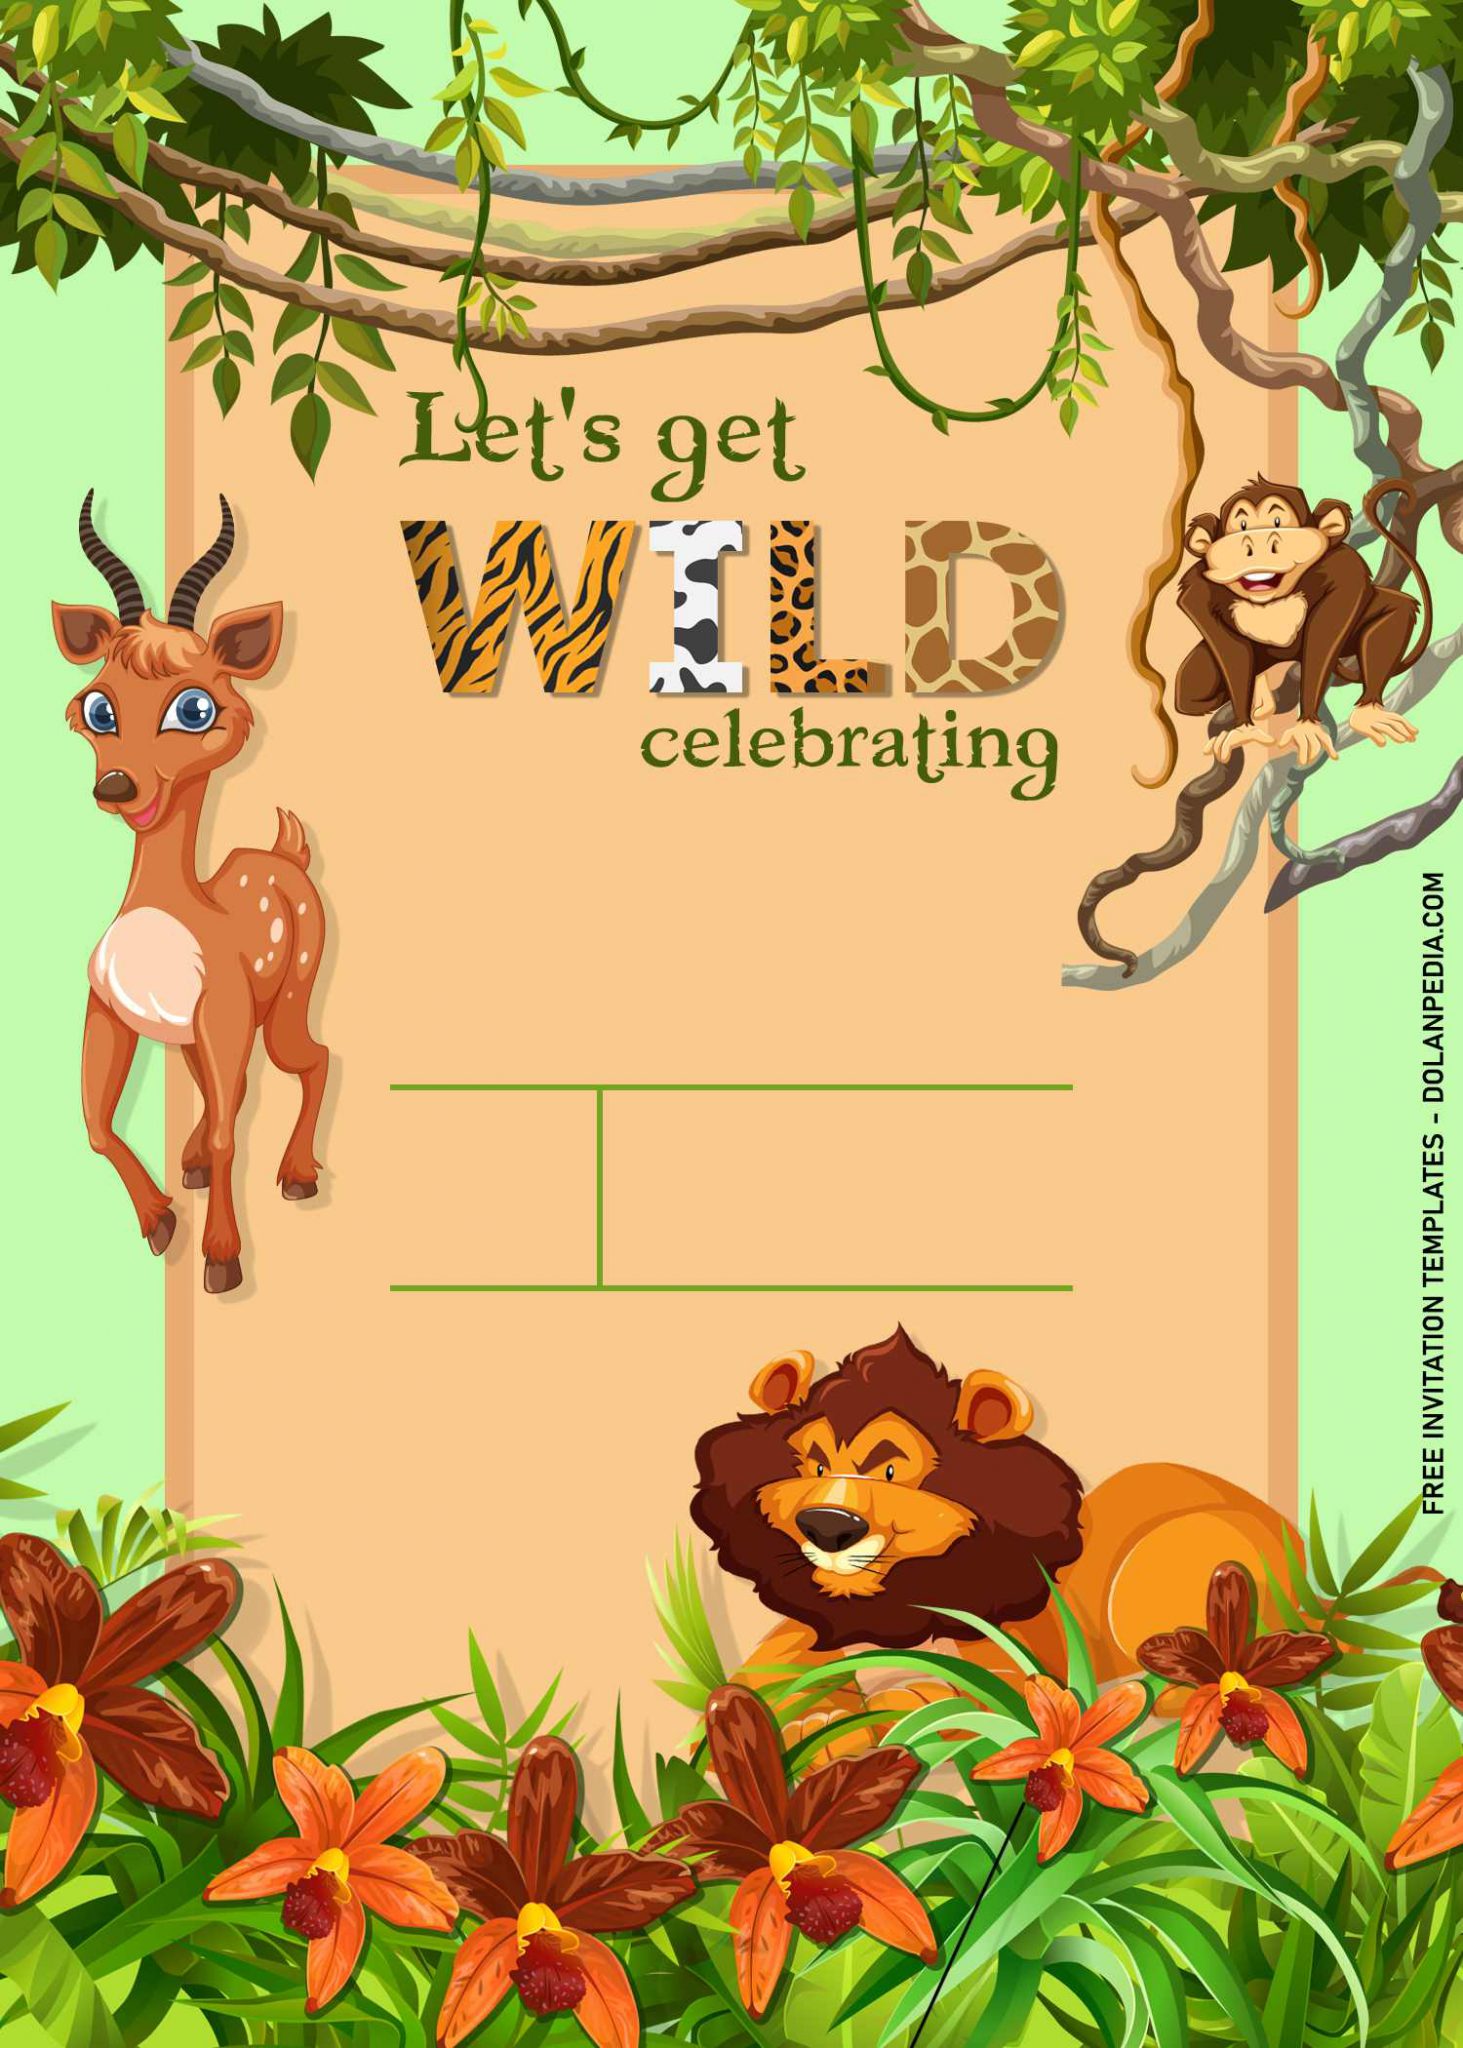 safari-birthday-invitation-free-template-download-free-piratebaypico-vrogue